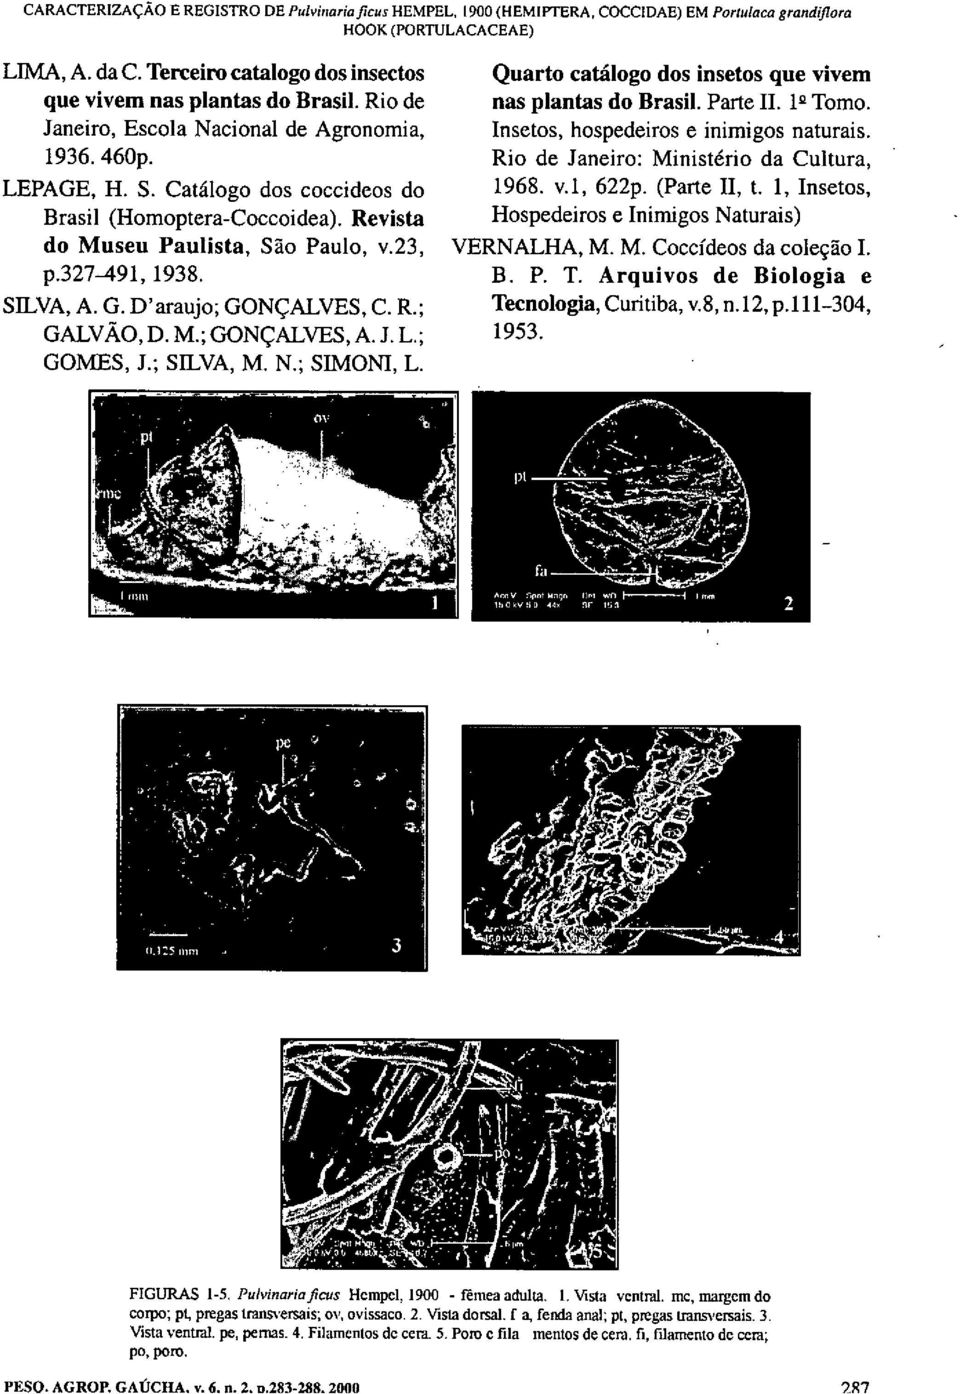 Revista do Museu Paulista, São Paulo, v.23, p.327-491, 1938. SILVA, A. G. D'araujo; GONÇALVES, C. R.; GALVÃO, D. M.; GONÇALVES, A. J. L.; GOMES, J.; SILVA, M. N.; SIMONI, L.